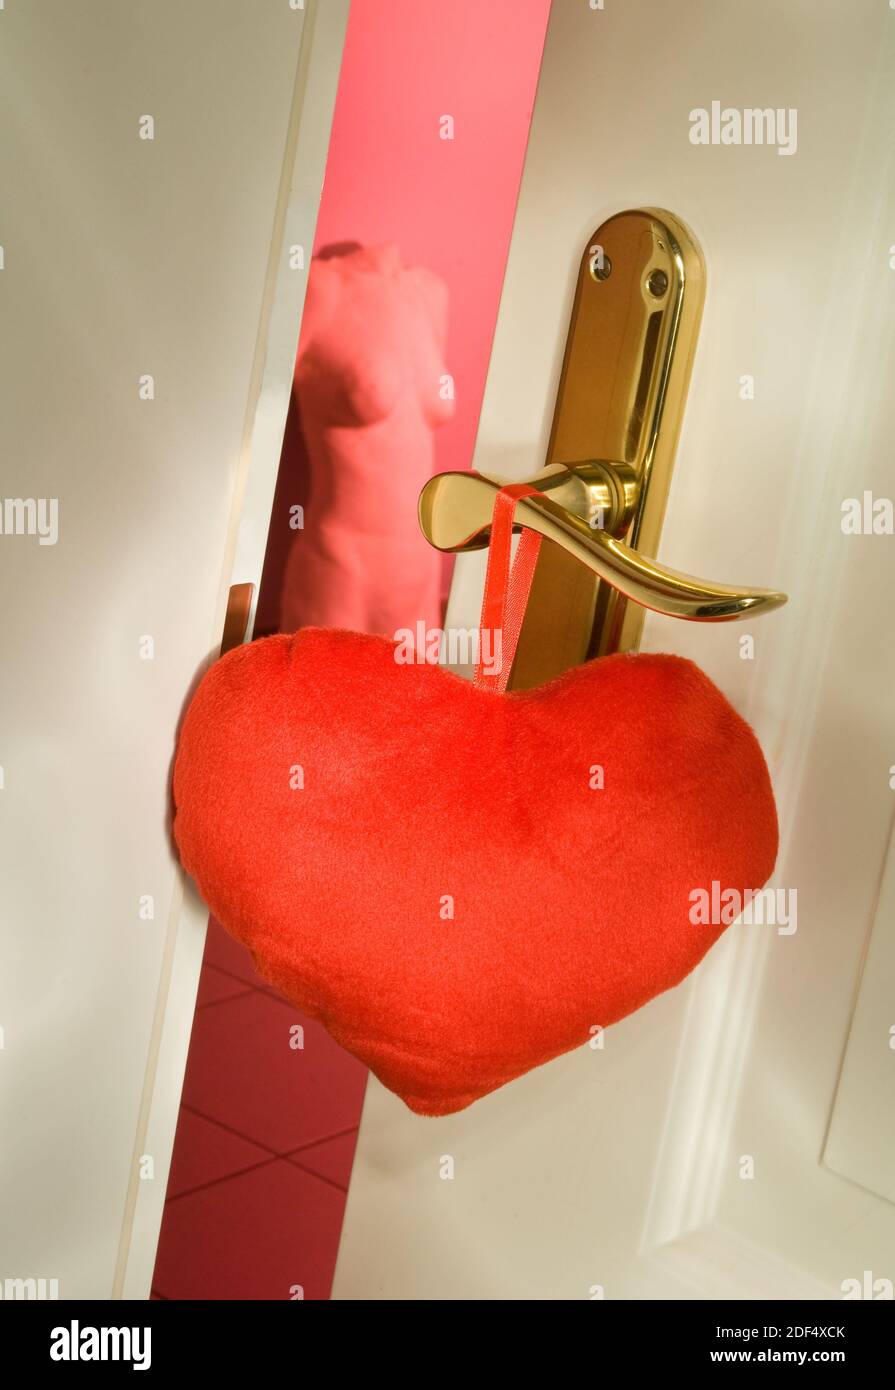 Ein rotes Herz hängt an einer Bordelltür Stock Photo